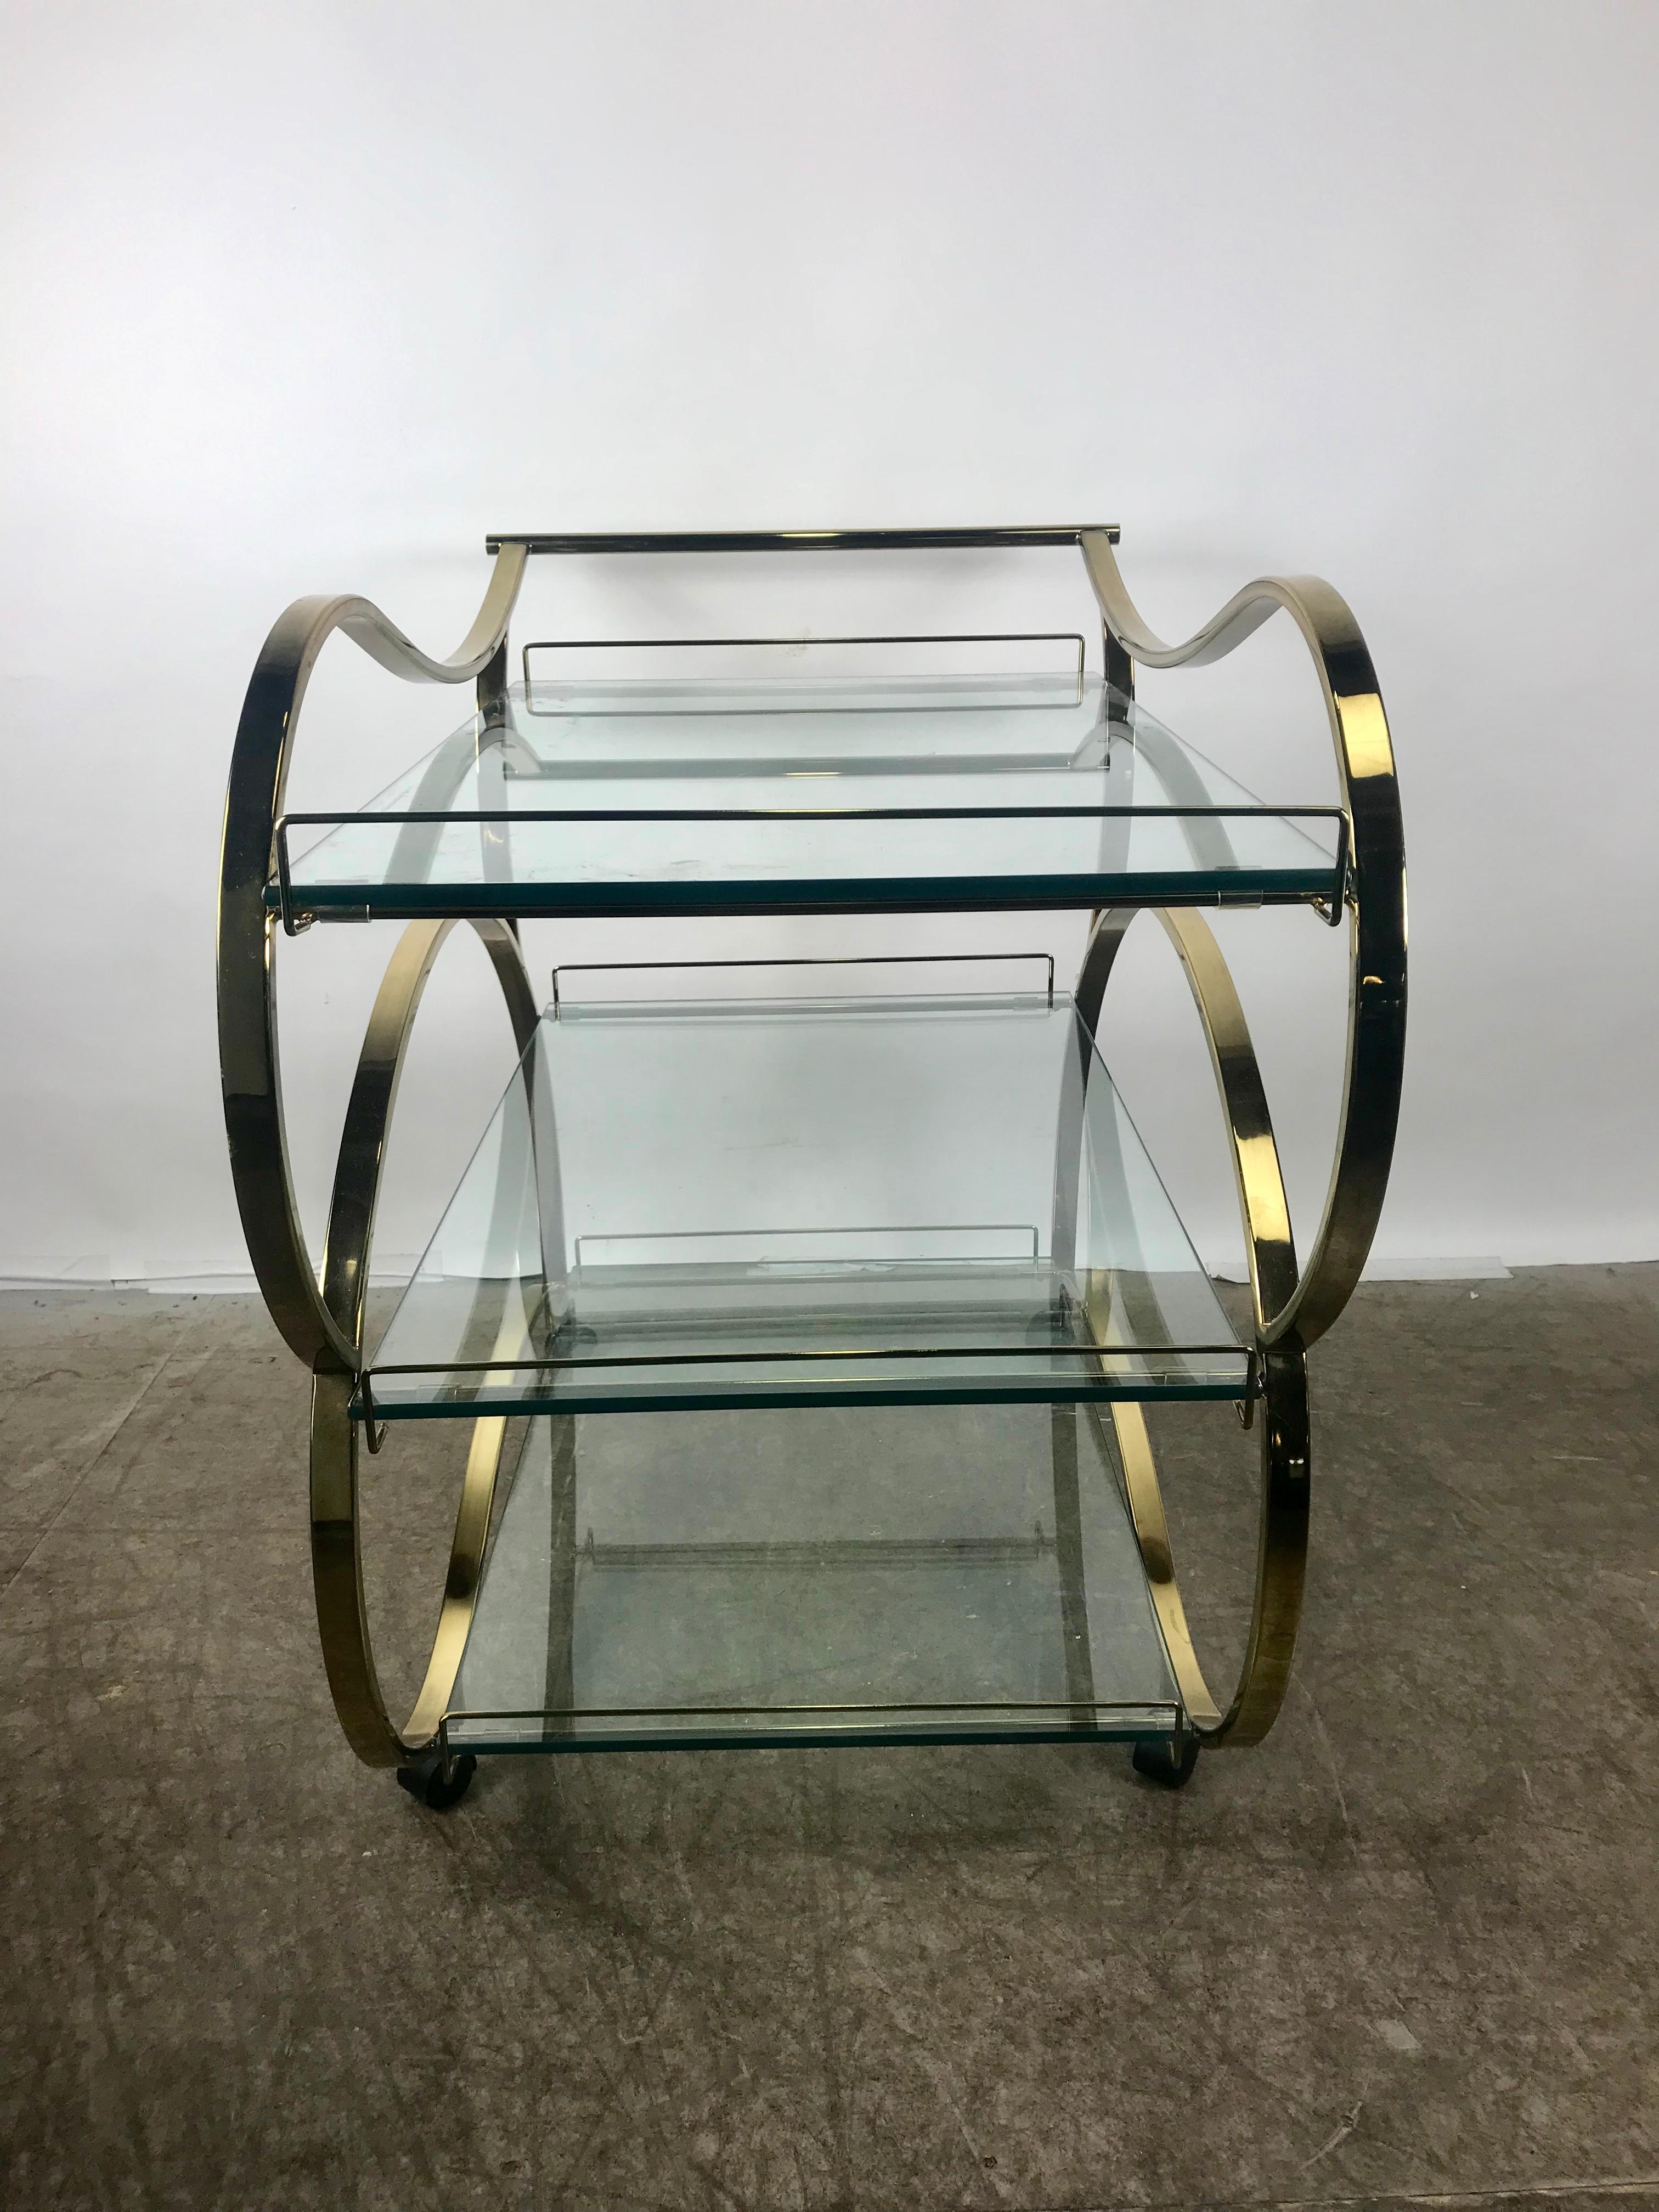 Streamlined Moderne Stunning Brass and Glass Modernist Tea or Bar Cart